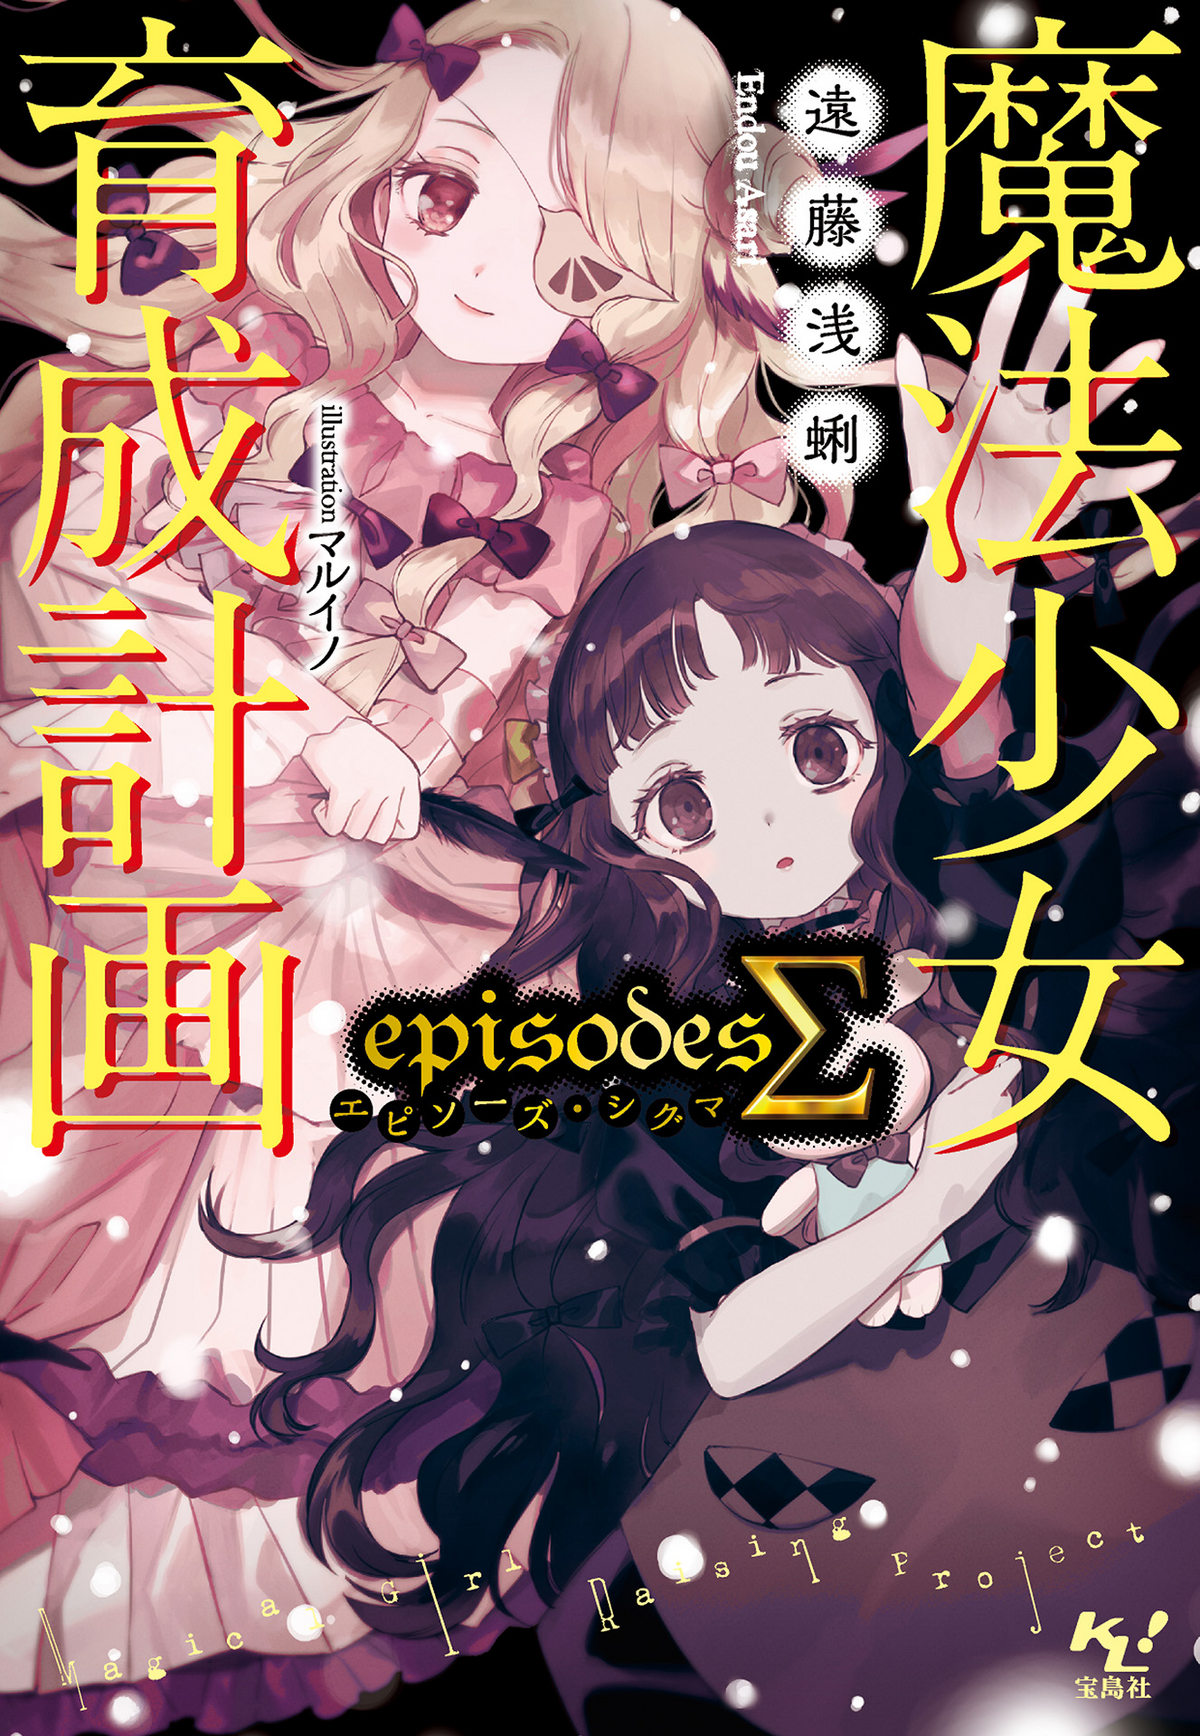 Mahou Shoujo Ikusei Keikaku (Magical Girl Raising Project) Anime Fabric  Wall Scroll Poster (32 x 33) Inches [A] Mahou Shoujo Ikusei- 16(L)